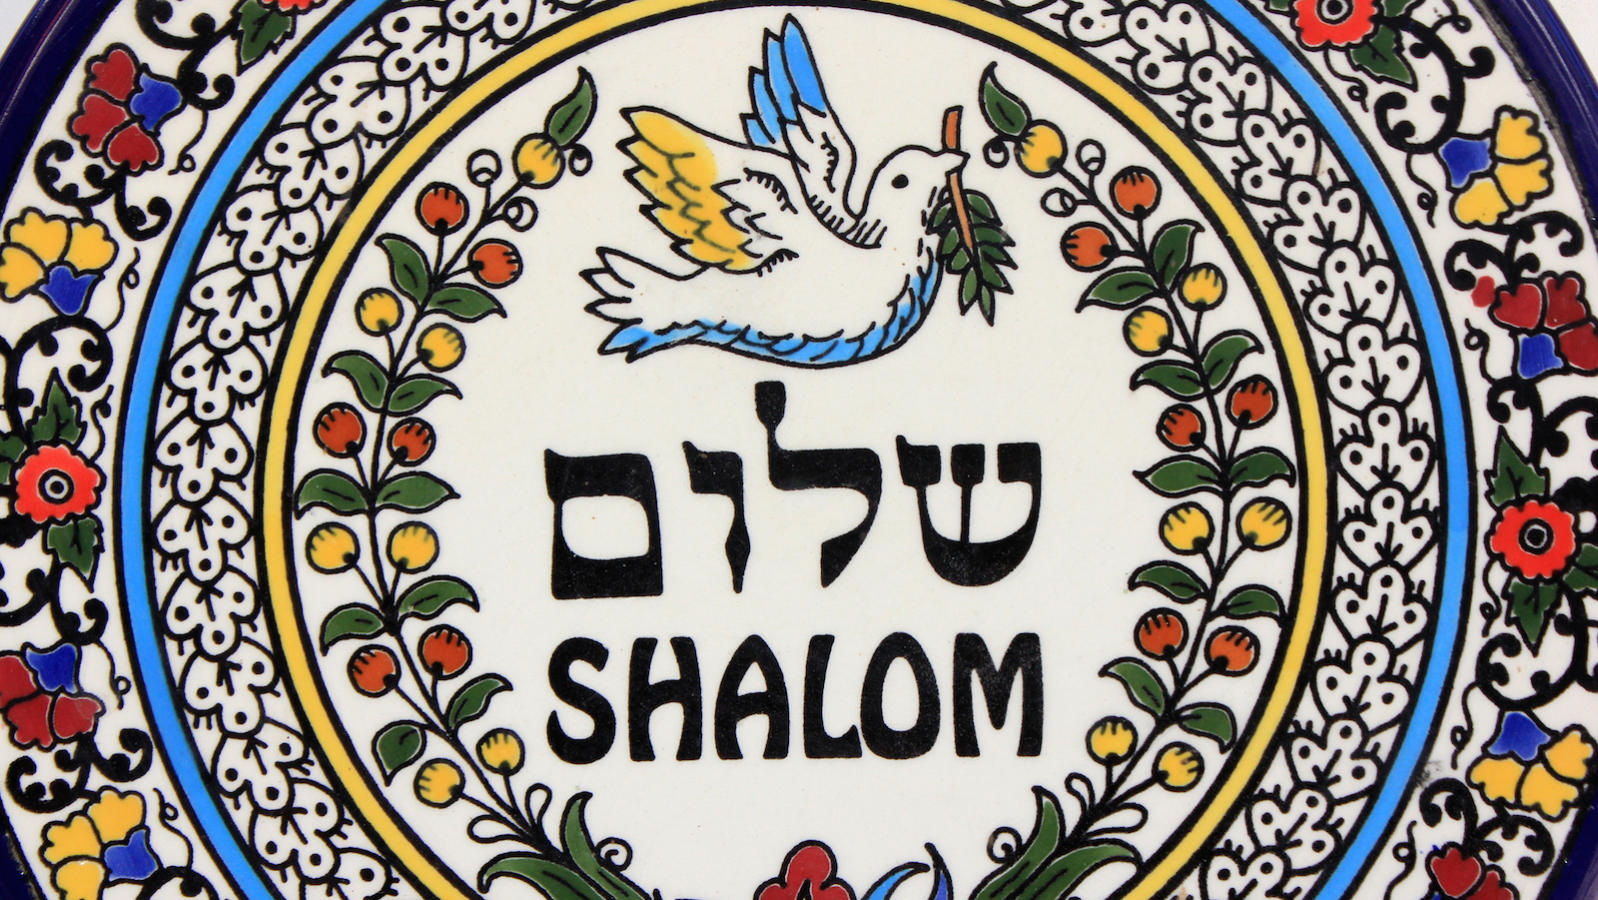 Shalom peace hebrew.